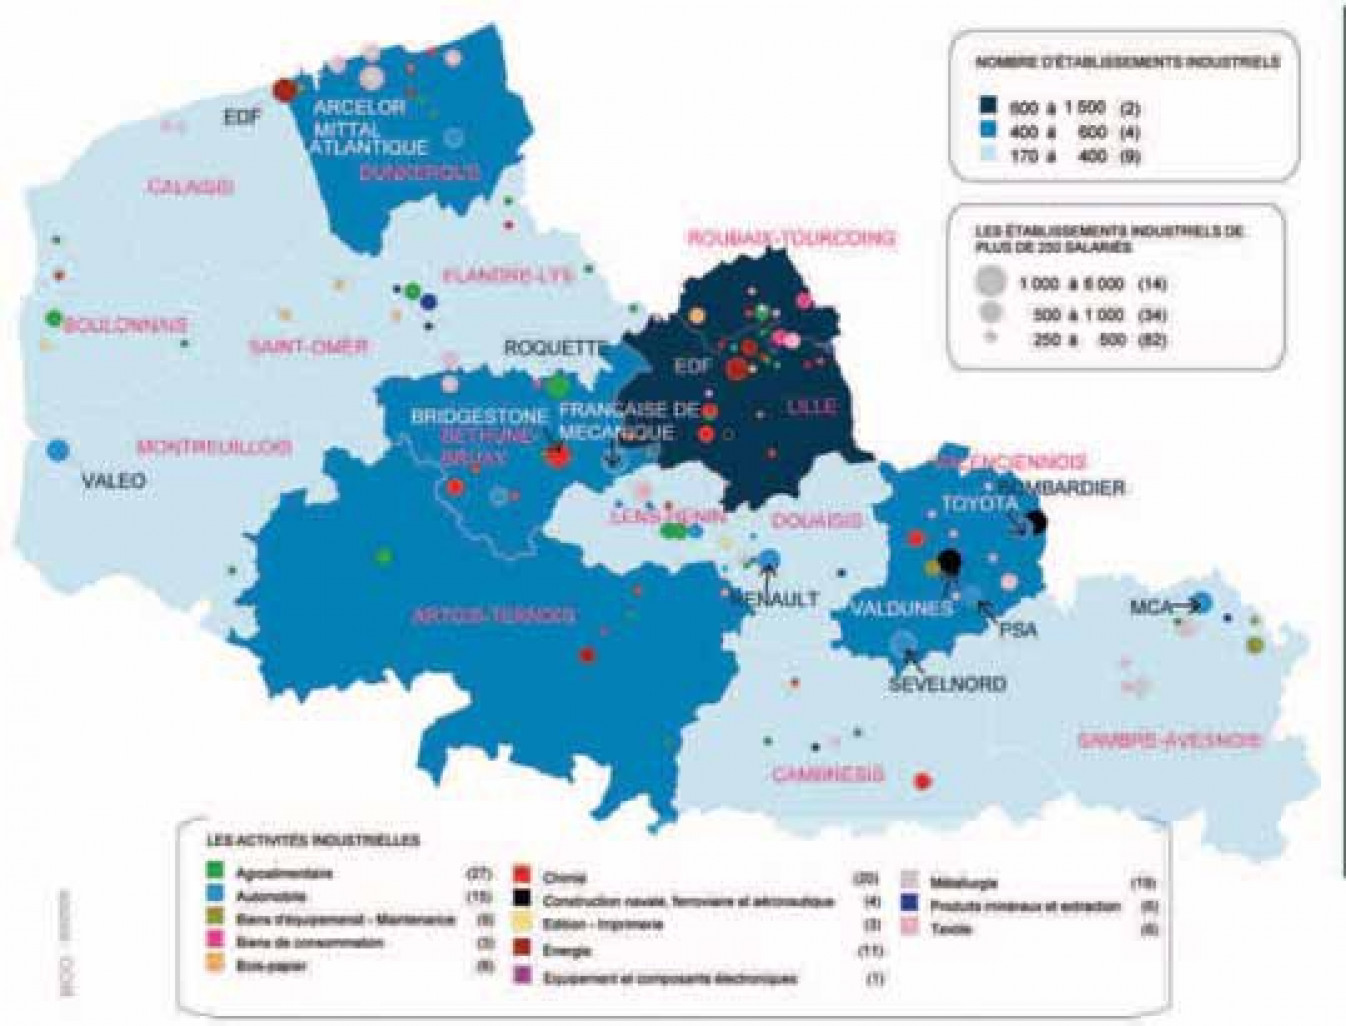 Les établissements industriels dans les zones d’emploi de la région Nord-Pas-de-Calais